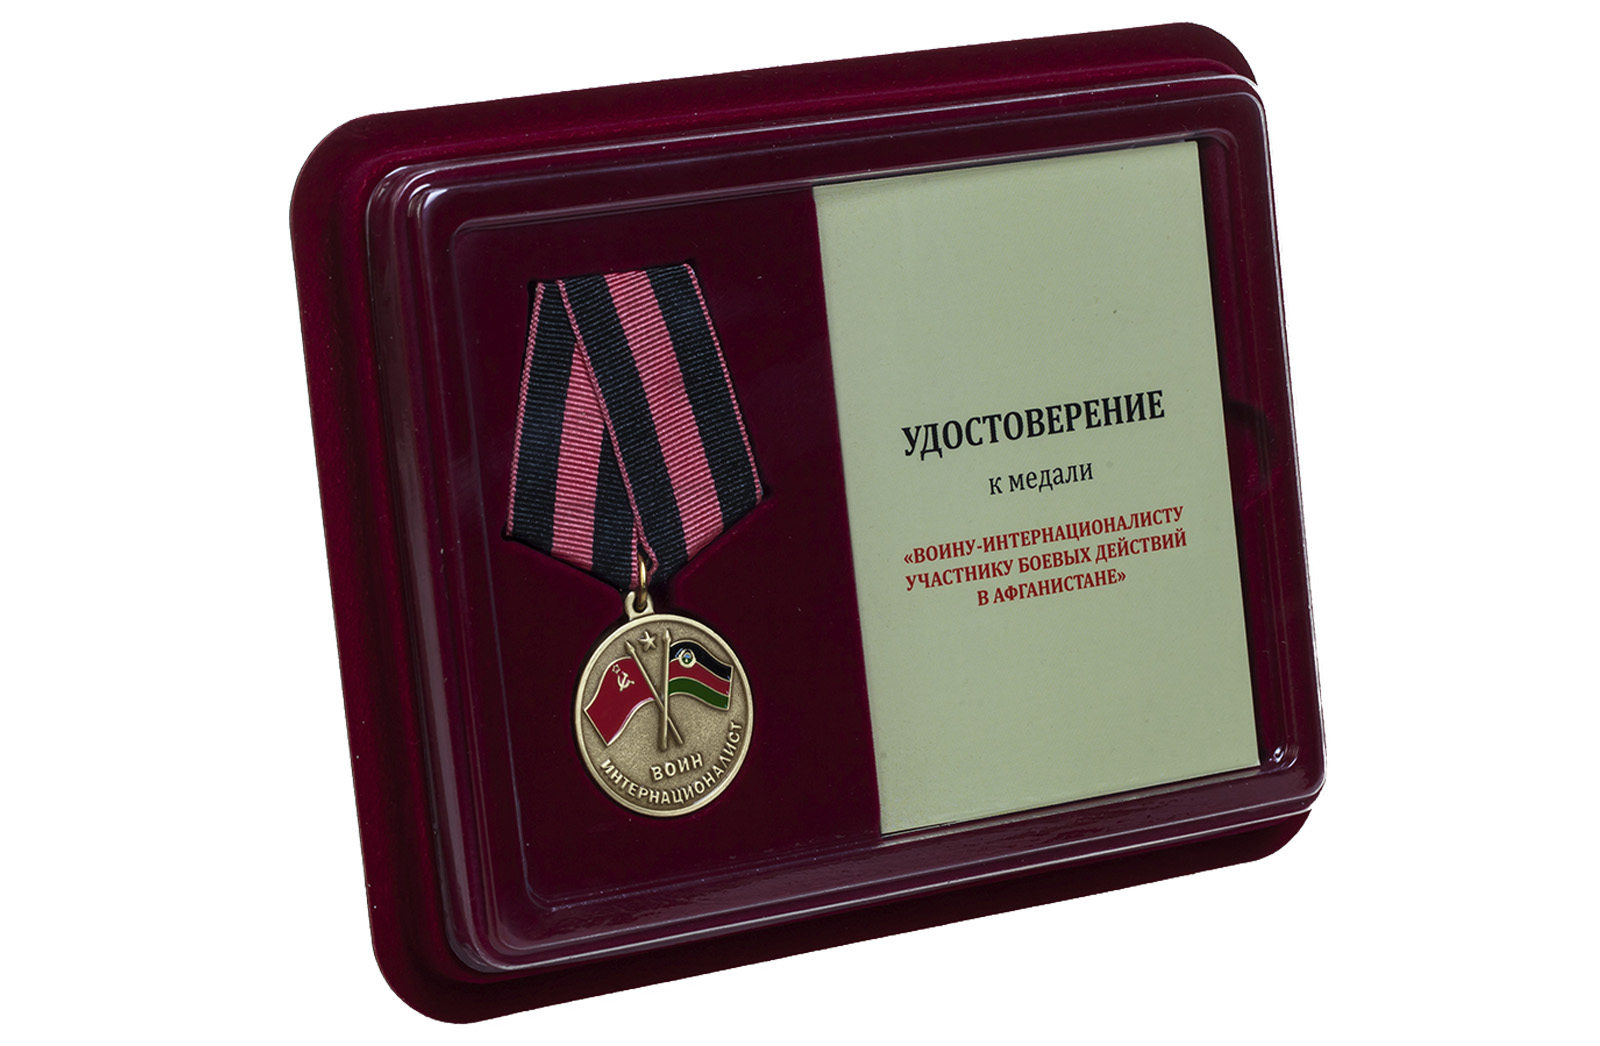 Медаль "Участнику боевых действий в Афганистане" в наградном футляре